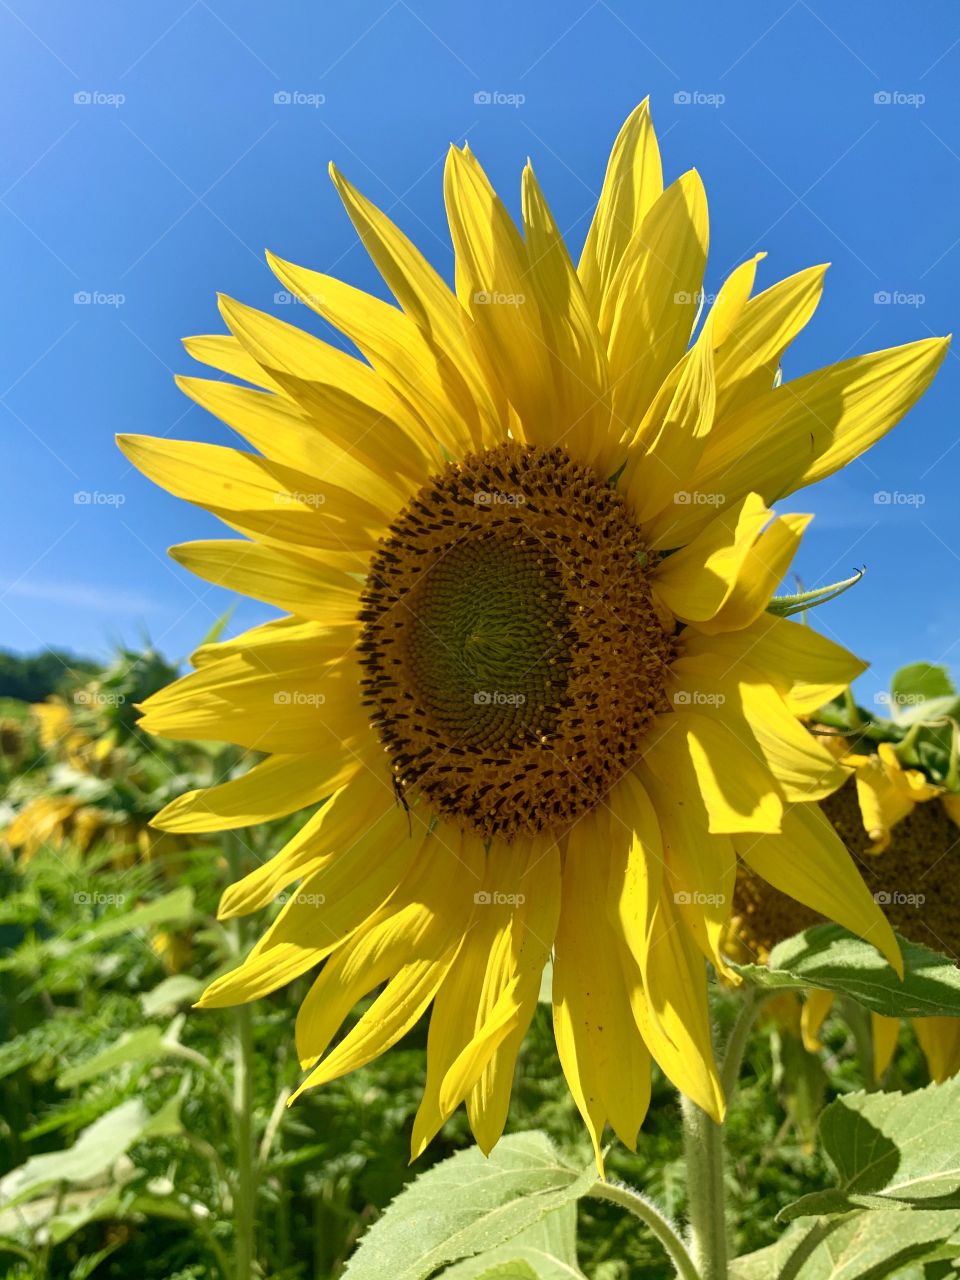 Sunflower standout